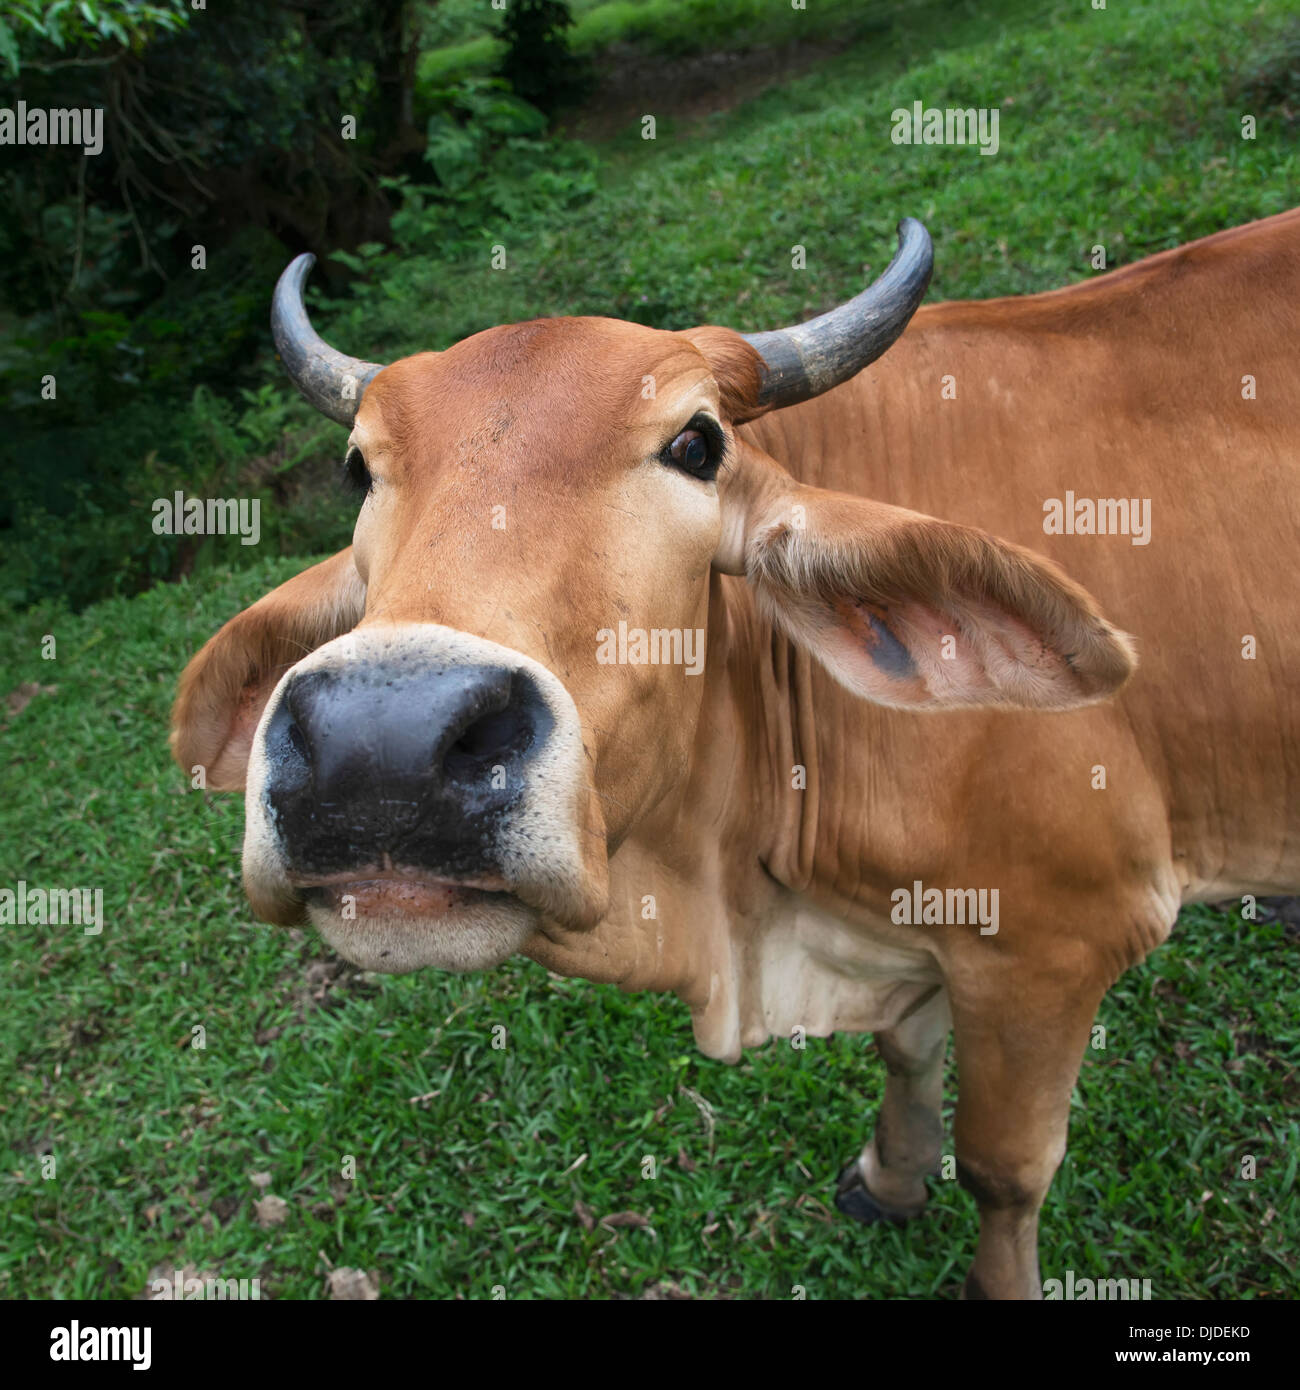 Gros plan du visage d'une vache ; Zacapa, Guatemala Banque D'Images